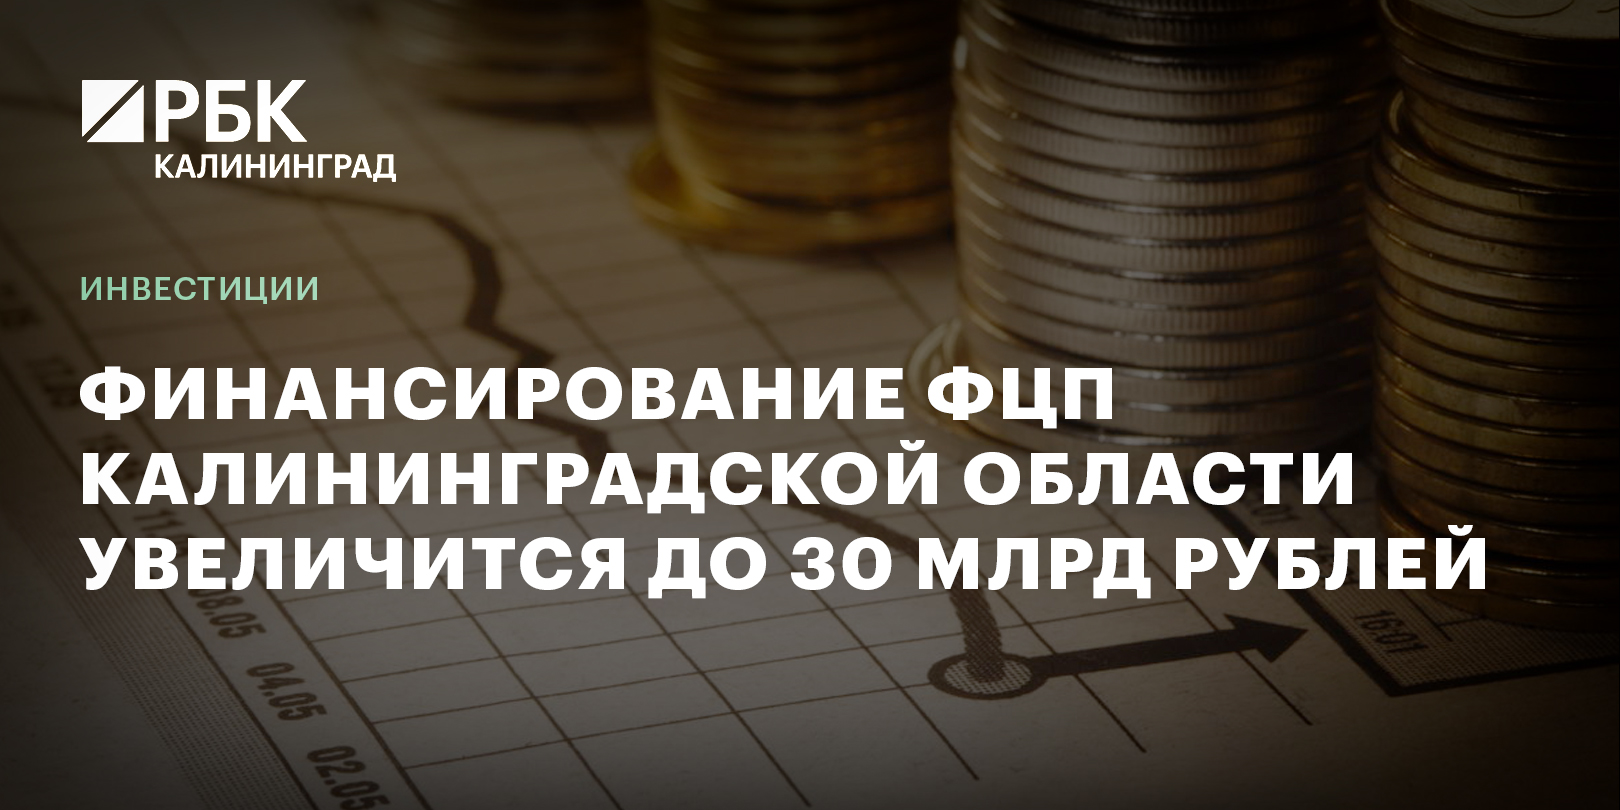 Финансирование ФЦП Калининградской области увеличится до 30 млрд рублей